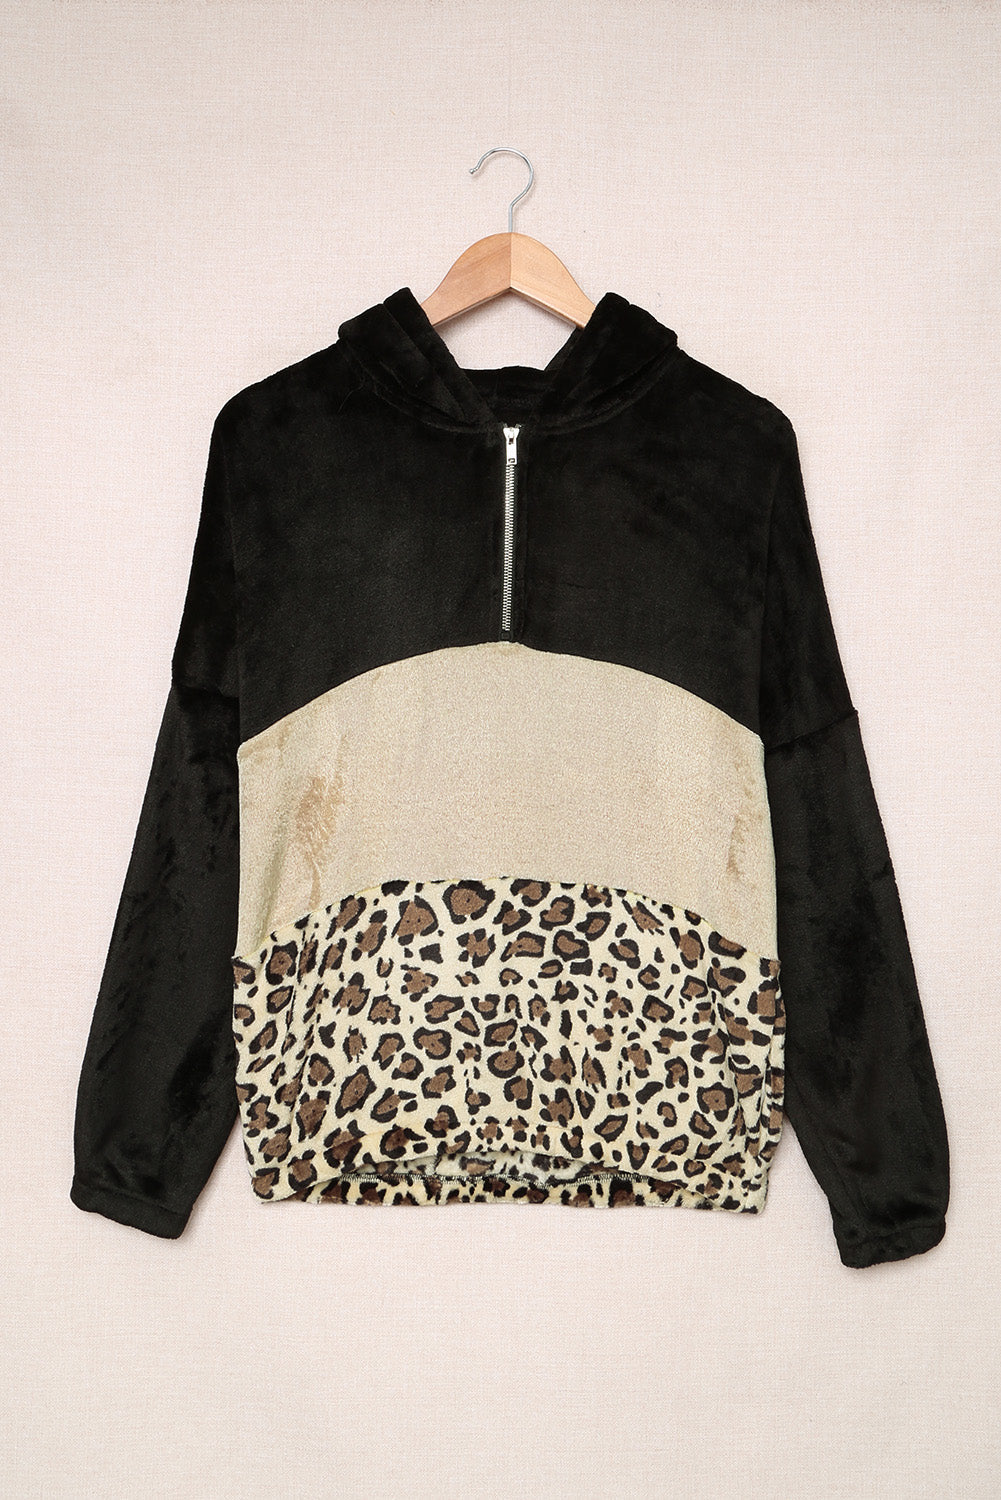 Leopard Color Block Pocket Fleece Quarter Zip Hoodie